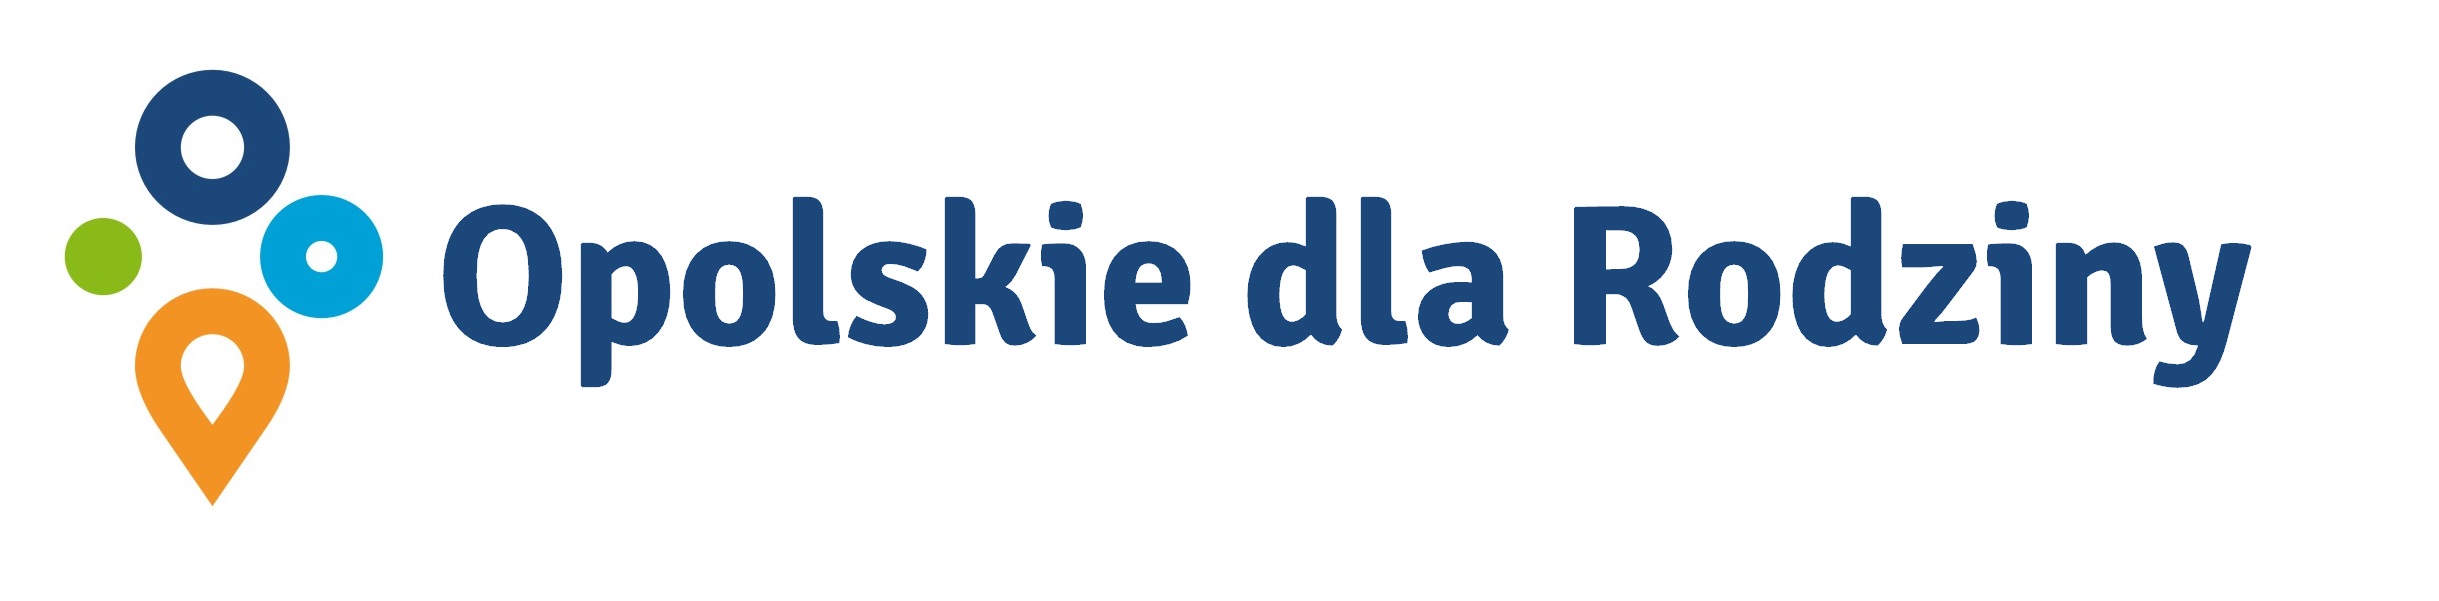 Logotyp: Opolskie dla Rodziny